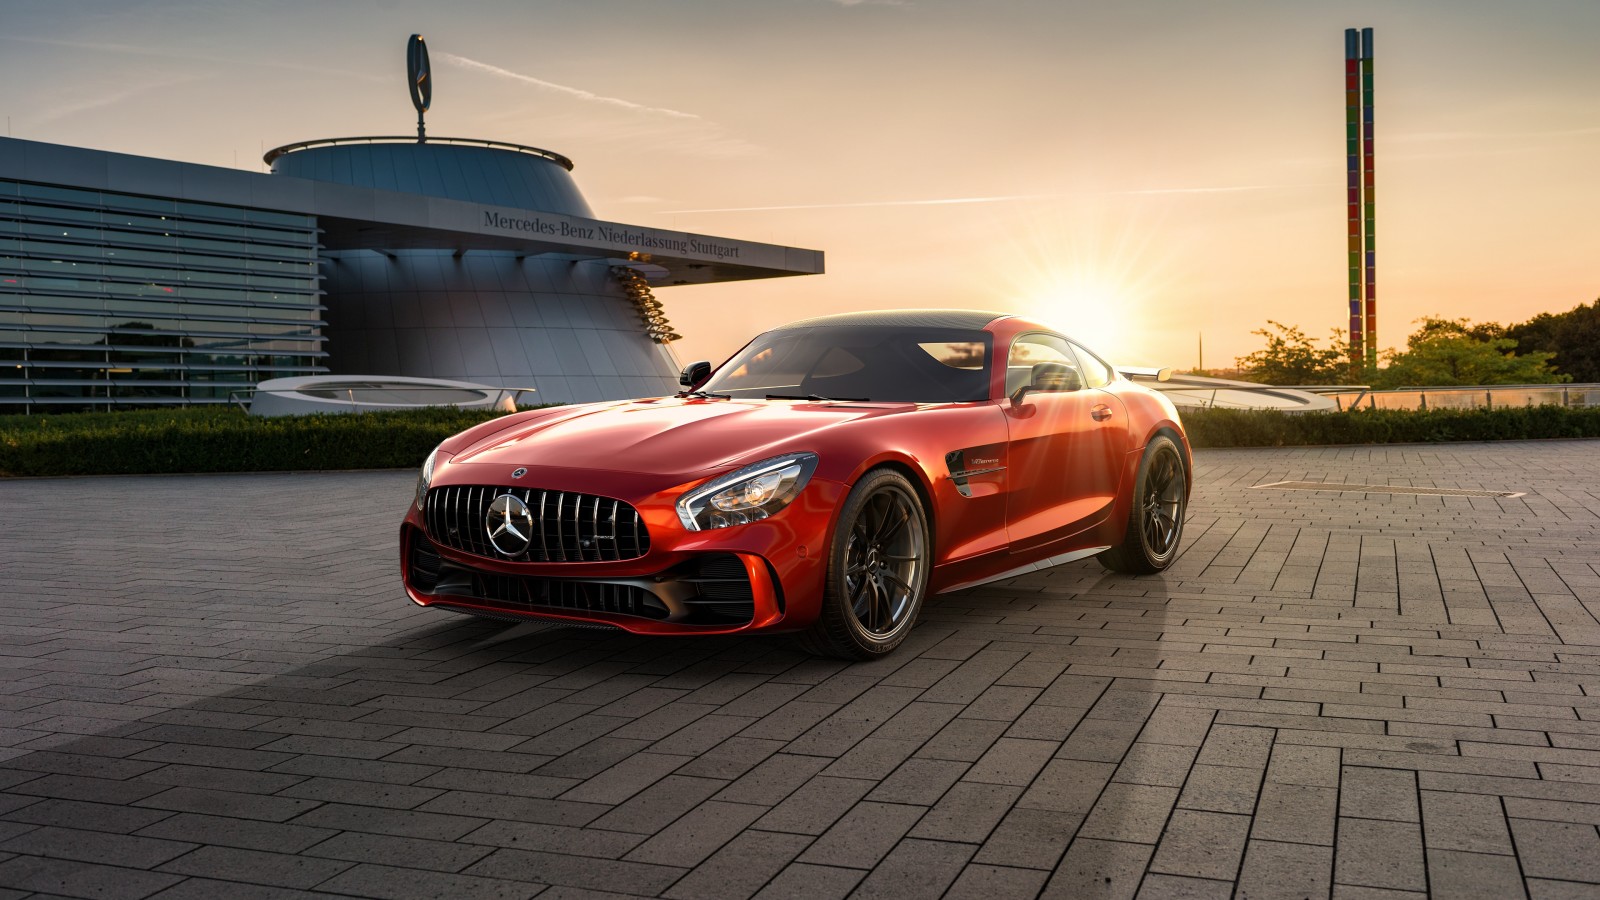 Hoàng hôn, Mercedes-Benz, AMG, 2019, kết xuất, CGI, GT R, bởi Ahmed Anas